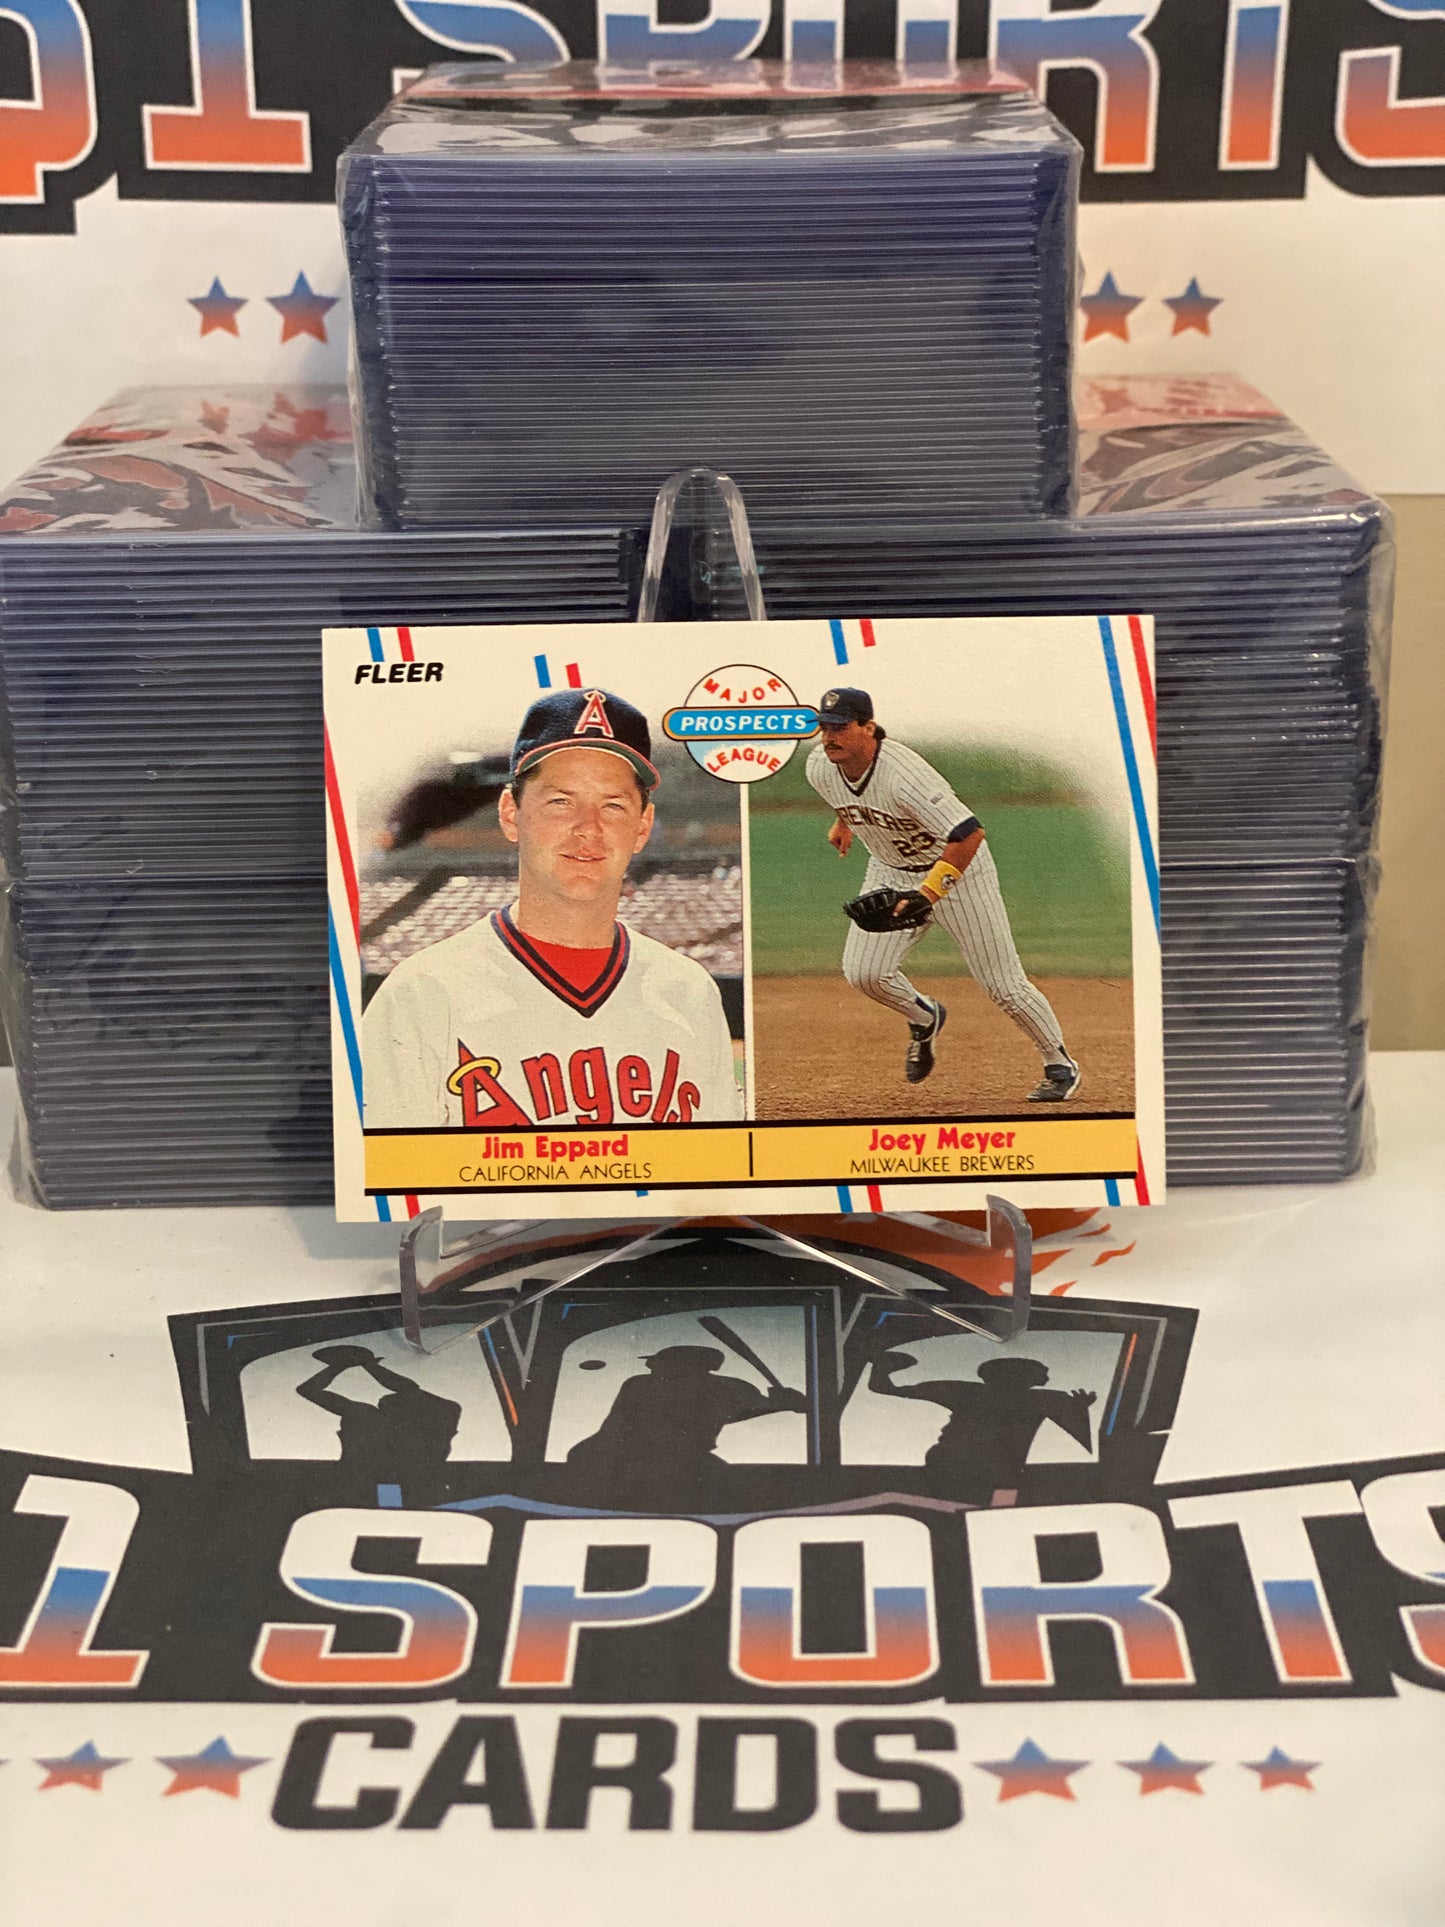 1988 Fleer (Major League Prospects) Jim Eppard & Joey Meyer Rookie #645